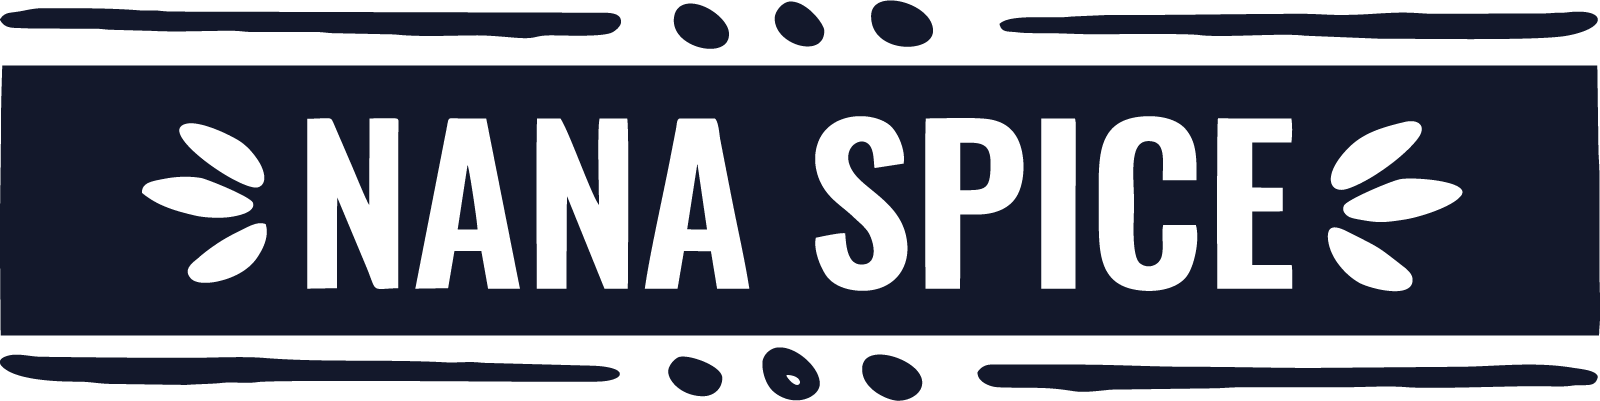 Nana Spice UK